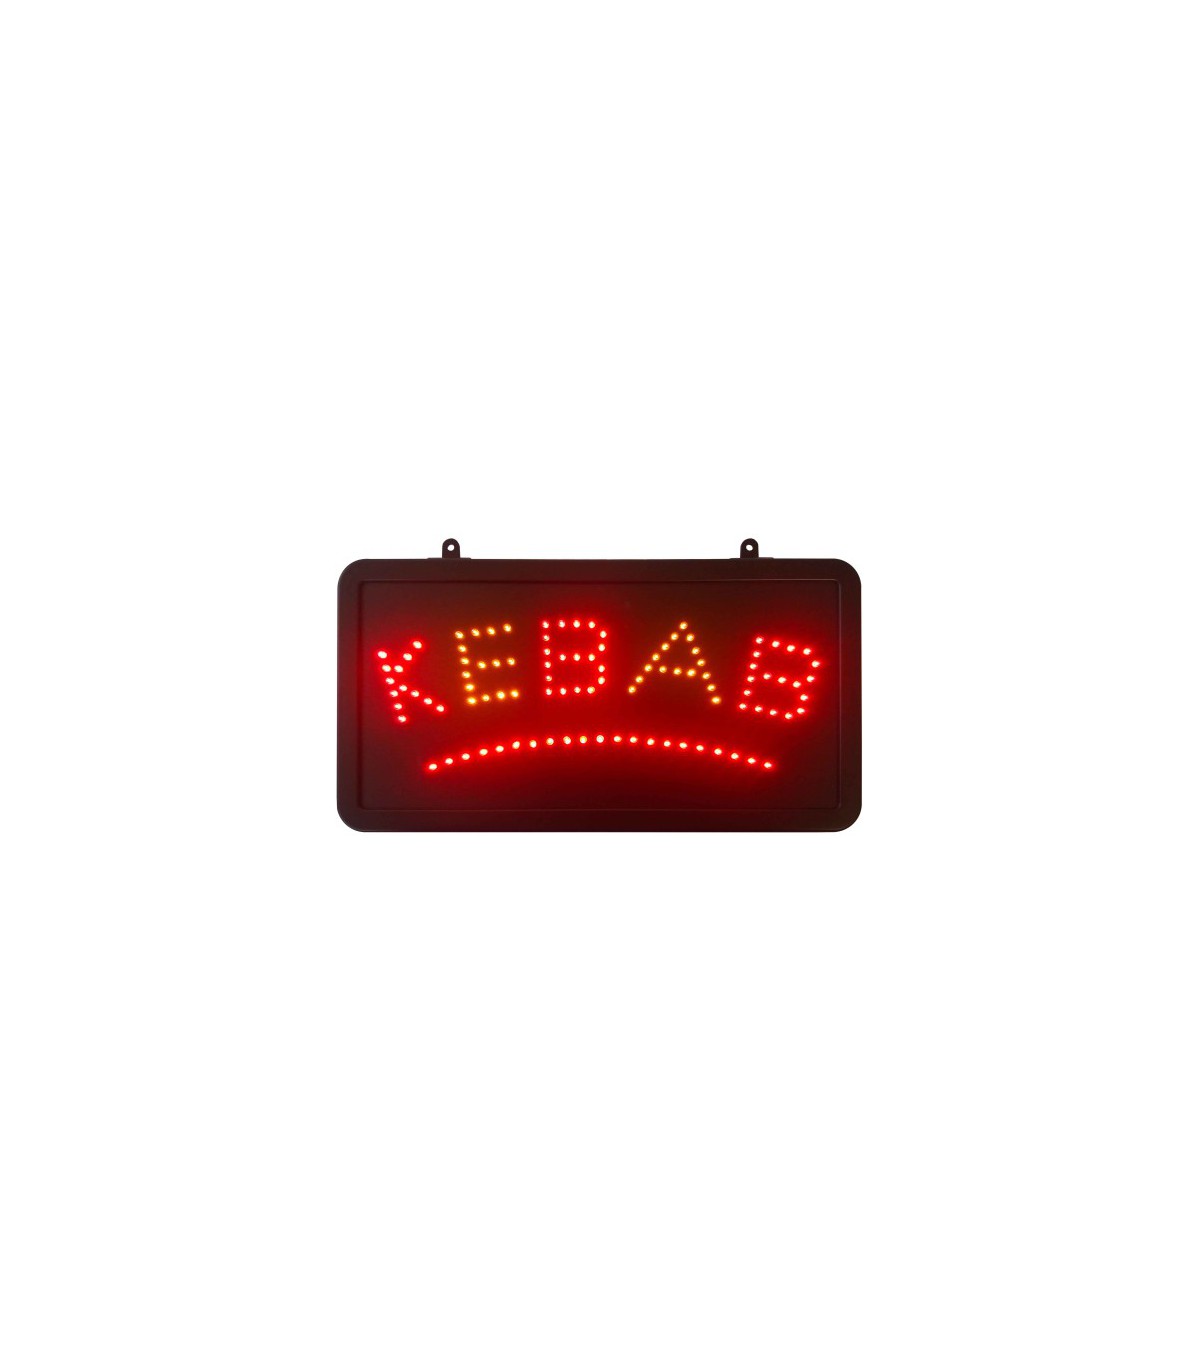 Enseigne lumineuse LED intérieur KEBAB Résultats page pour